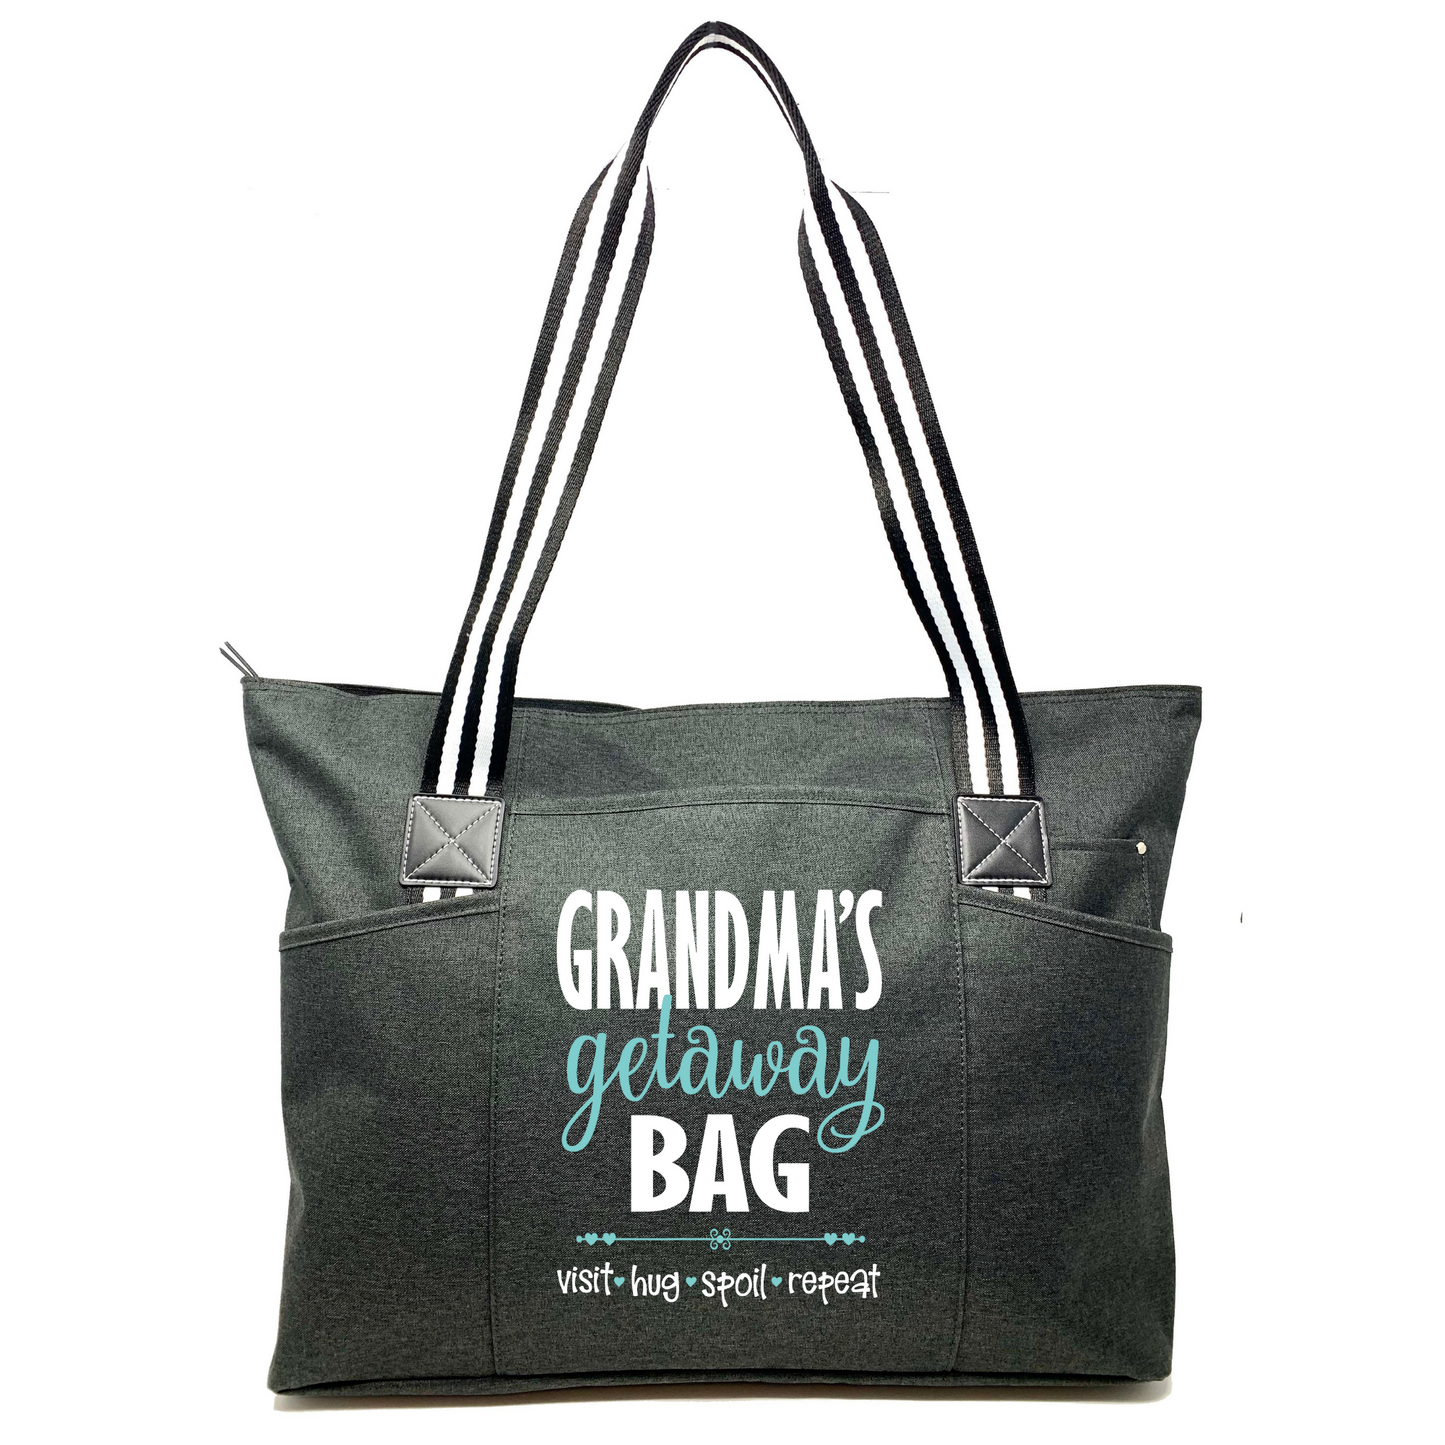 Grandma's Getaway Black Tessa Tote Bag for Grandmothers